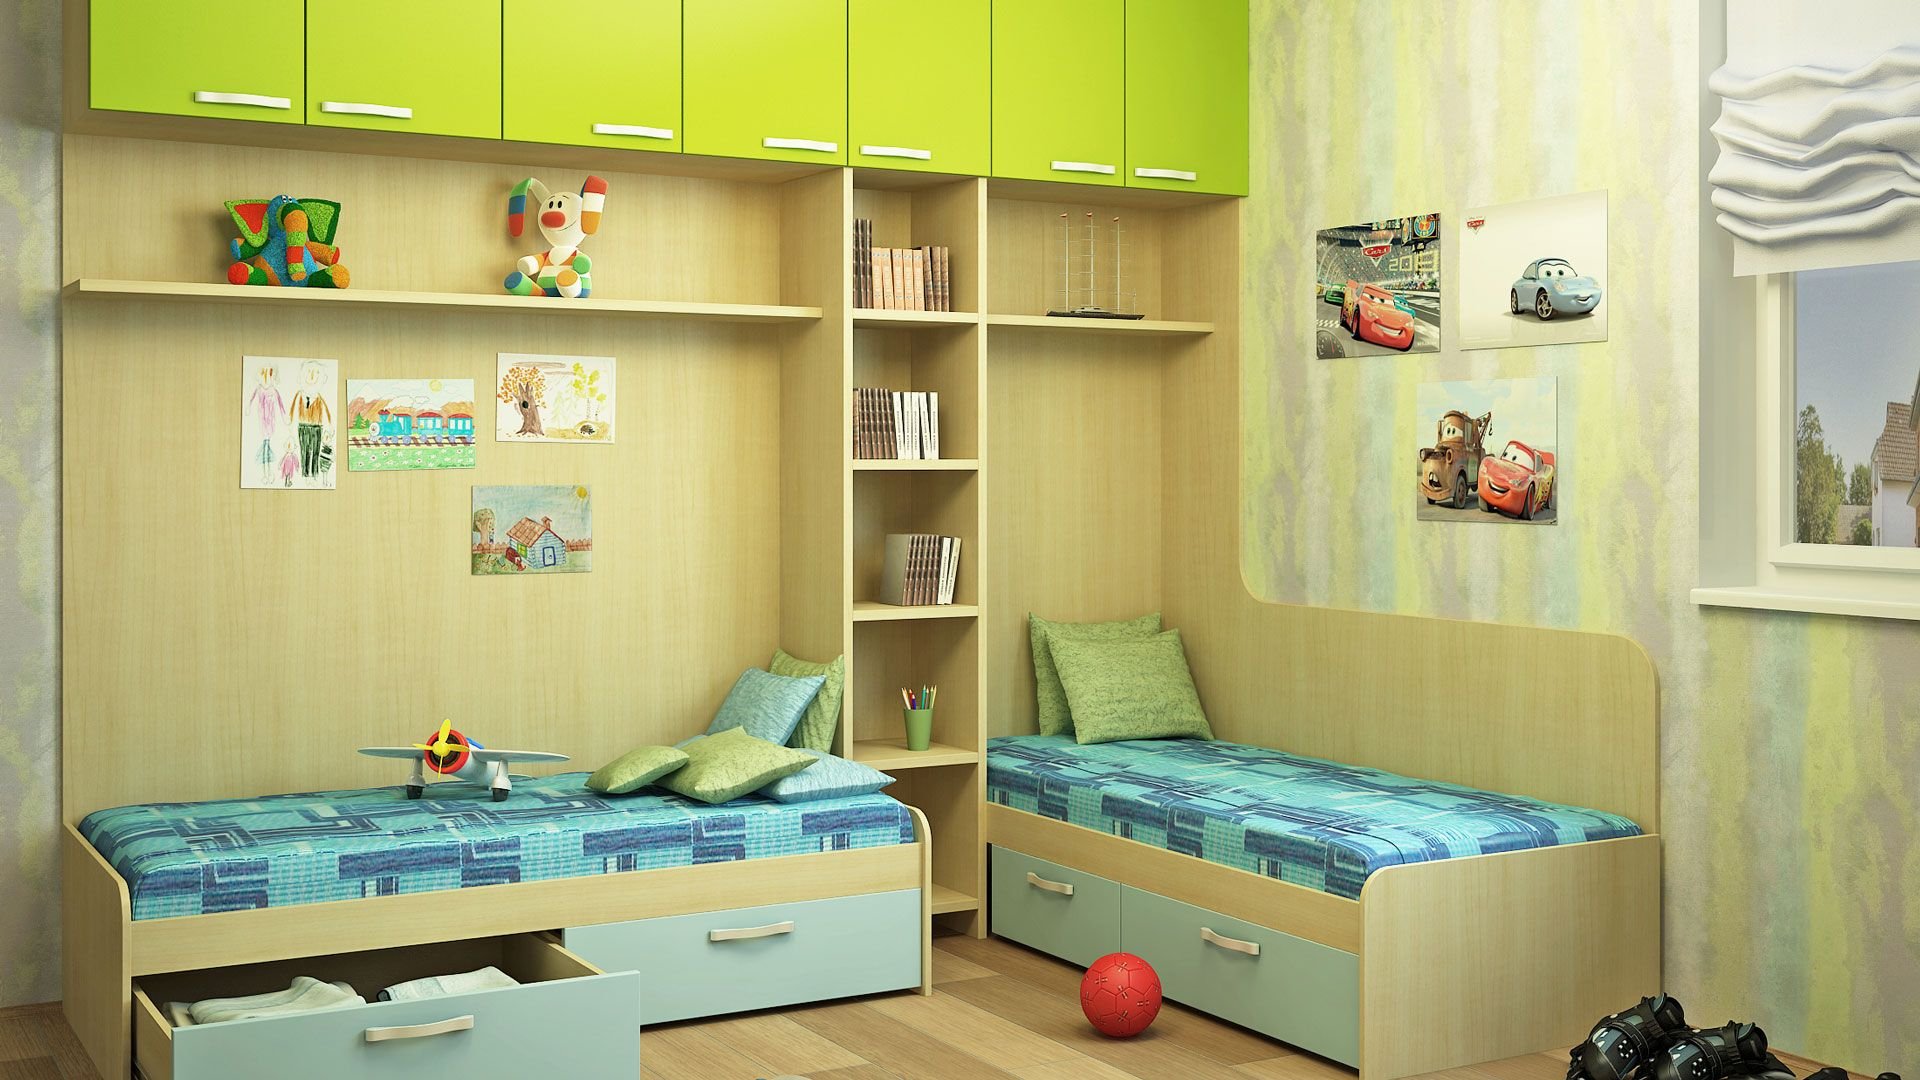 Мебель для детской комнаты для двоих. Модульные детские комнаты для двоих. Детская мебель для двоих детей. Мебель для детской для двоих детей. Корпусная мебель для детской комнаты для двоих.